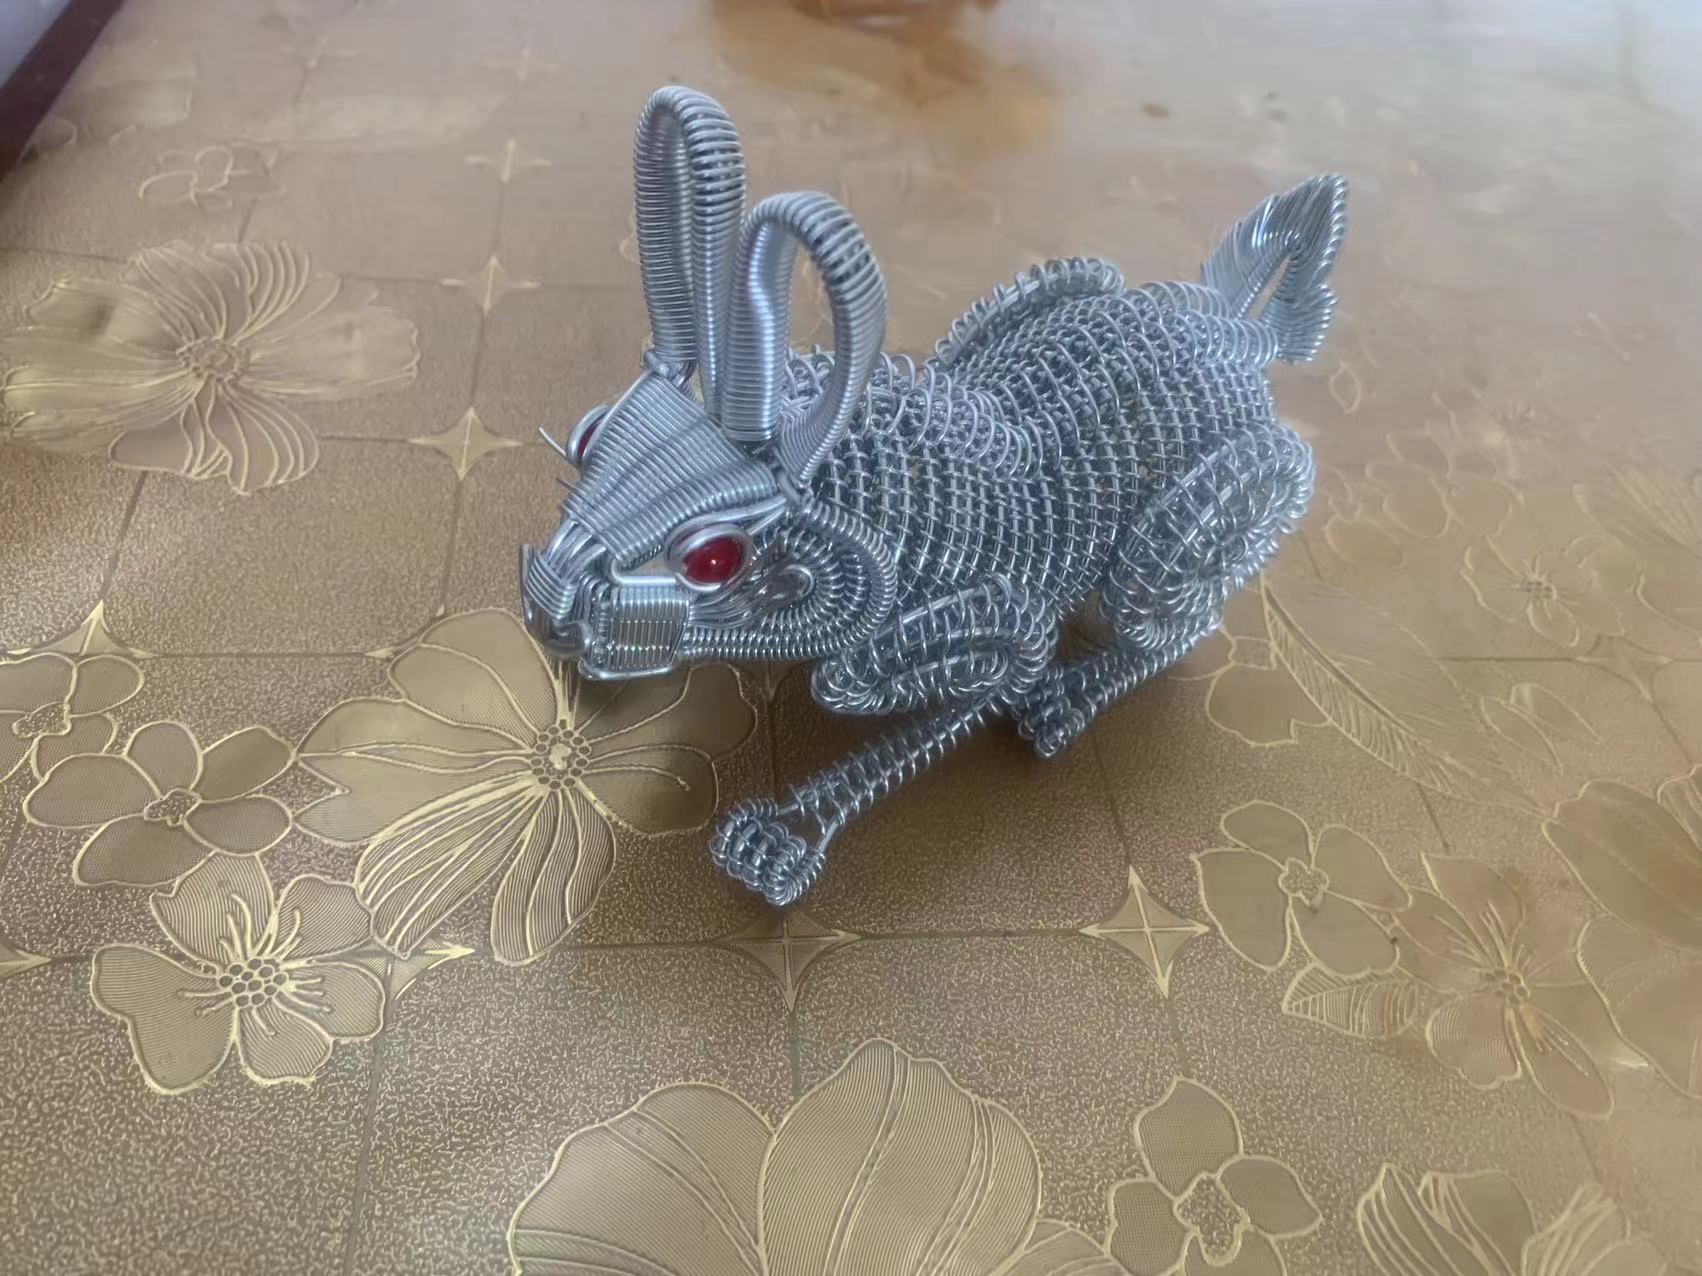 特色手工艺品铝线编织小白兔子模型摆件金属铁丝制作创意礼品礼物-图1